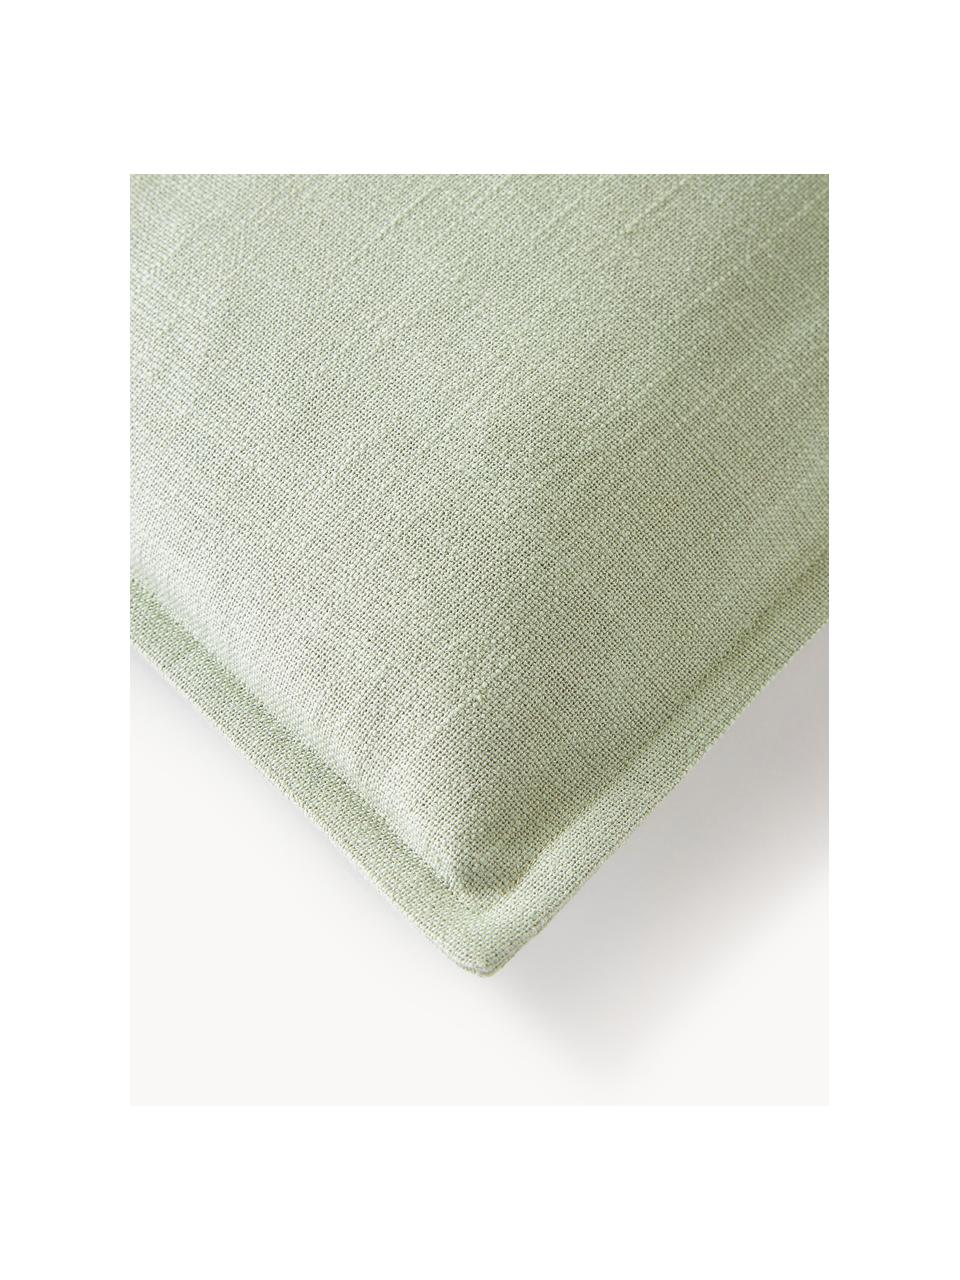 Poszewka na poduszkę z bawełny Vicky, 100% bawełna, Szałwiowy zielony, S 50 x D 50 cm